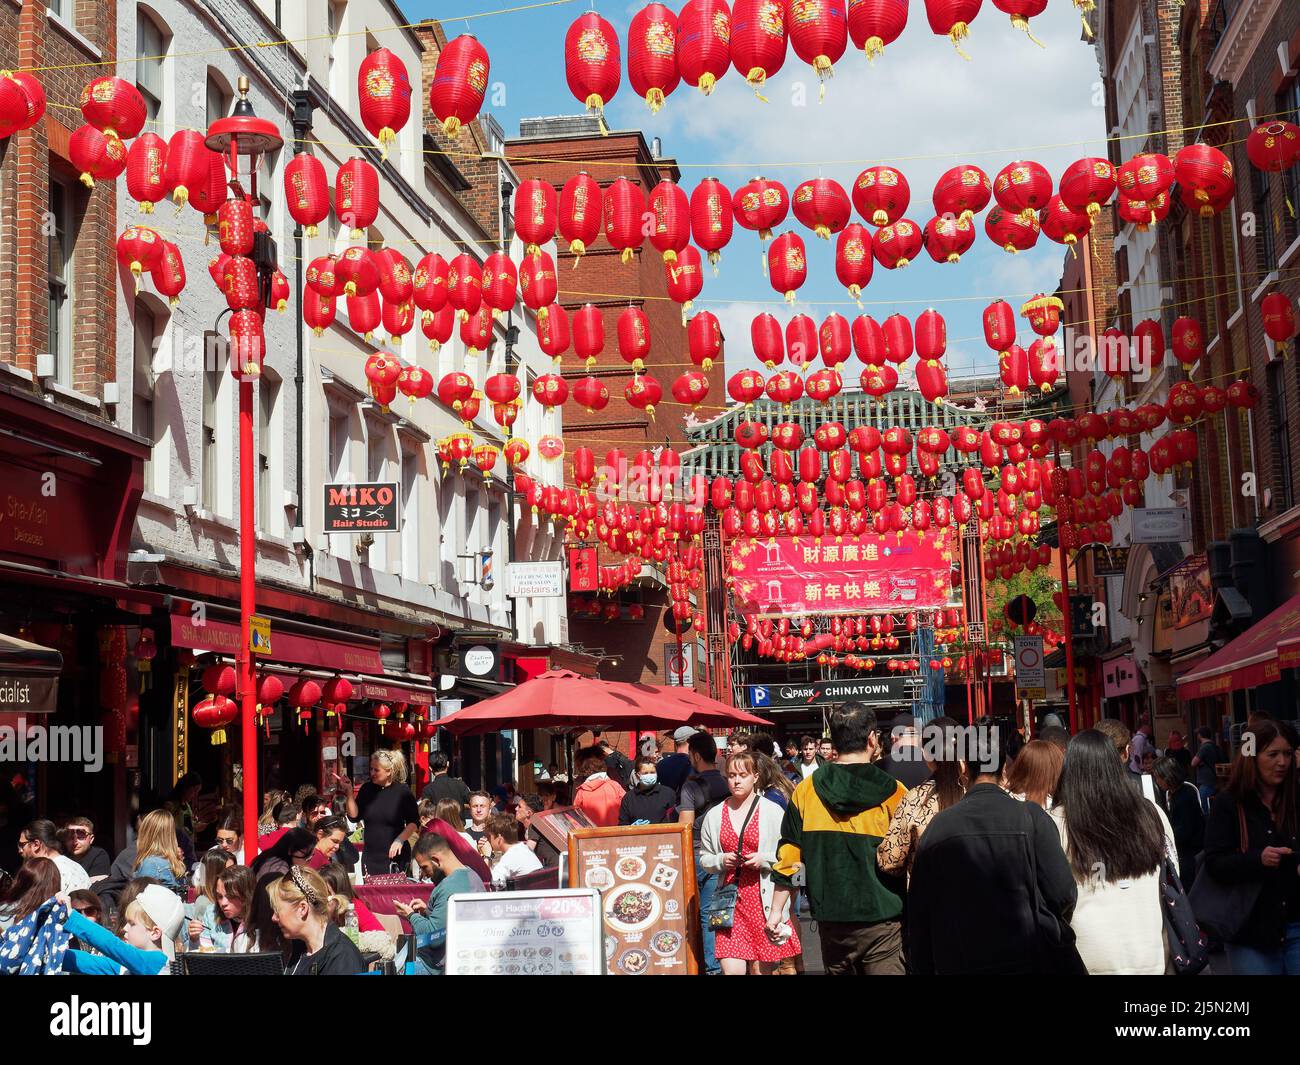 Una vista a lo largo de la calle Gerrard en el barrio chino de Londres decorado con faroles rojos colgantes Foto de stock